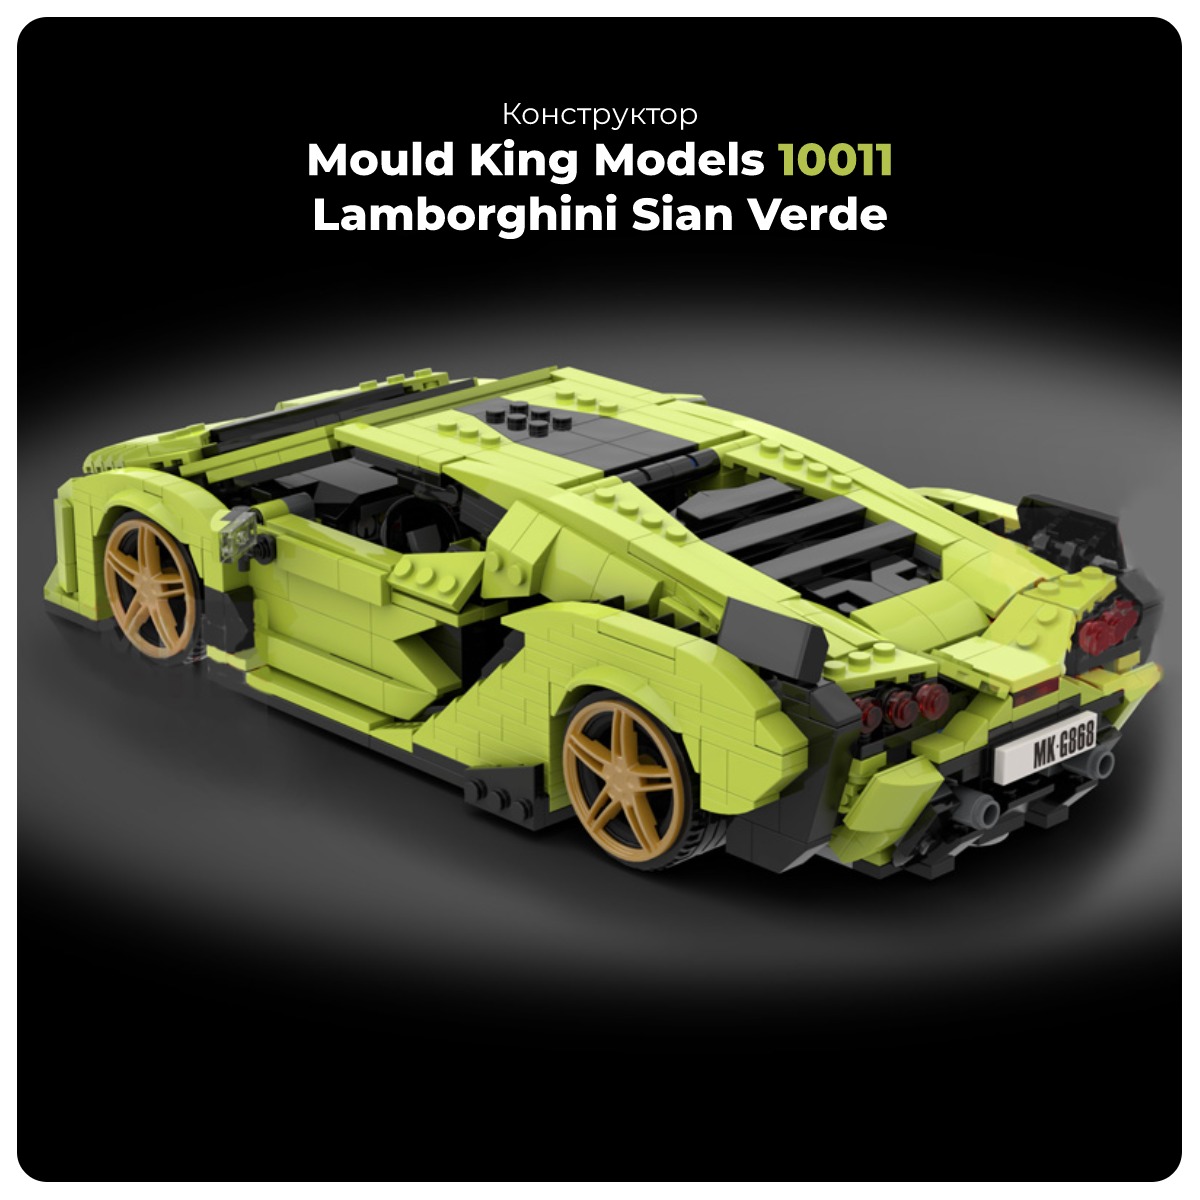 Mould-King-Models-10011-Lamborghini-Sian-Verde-01